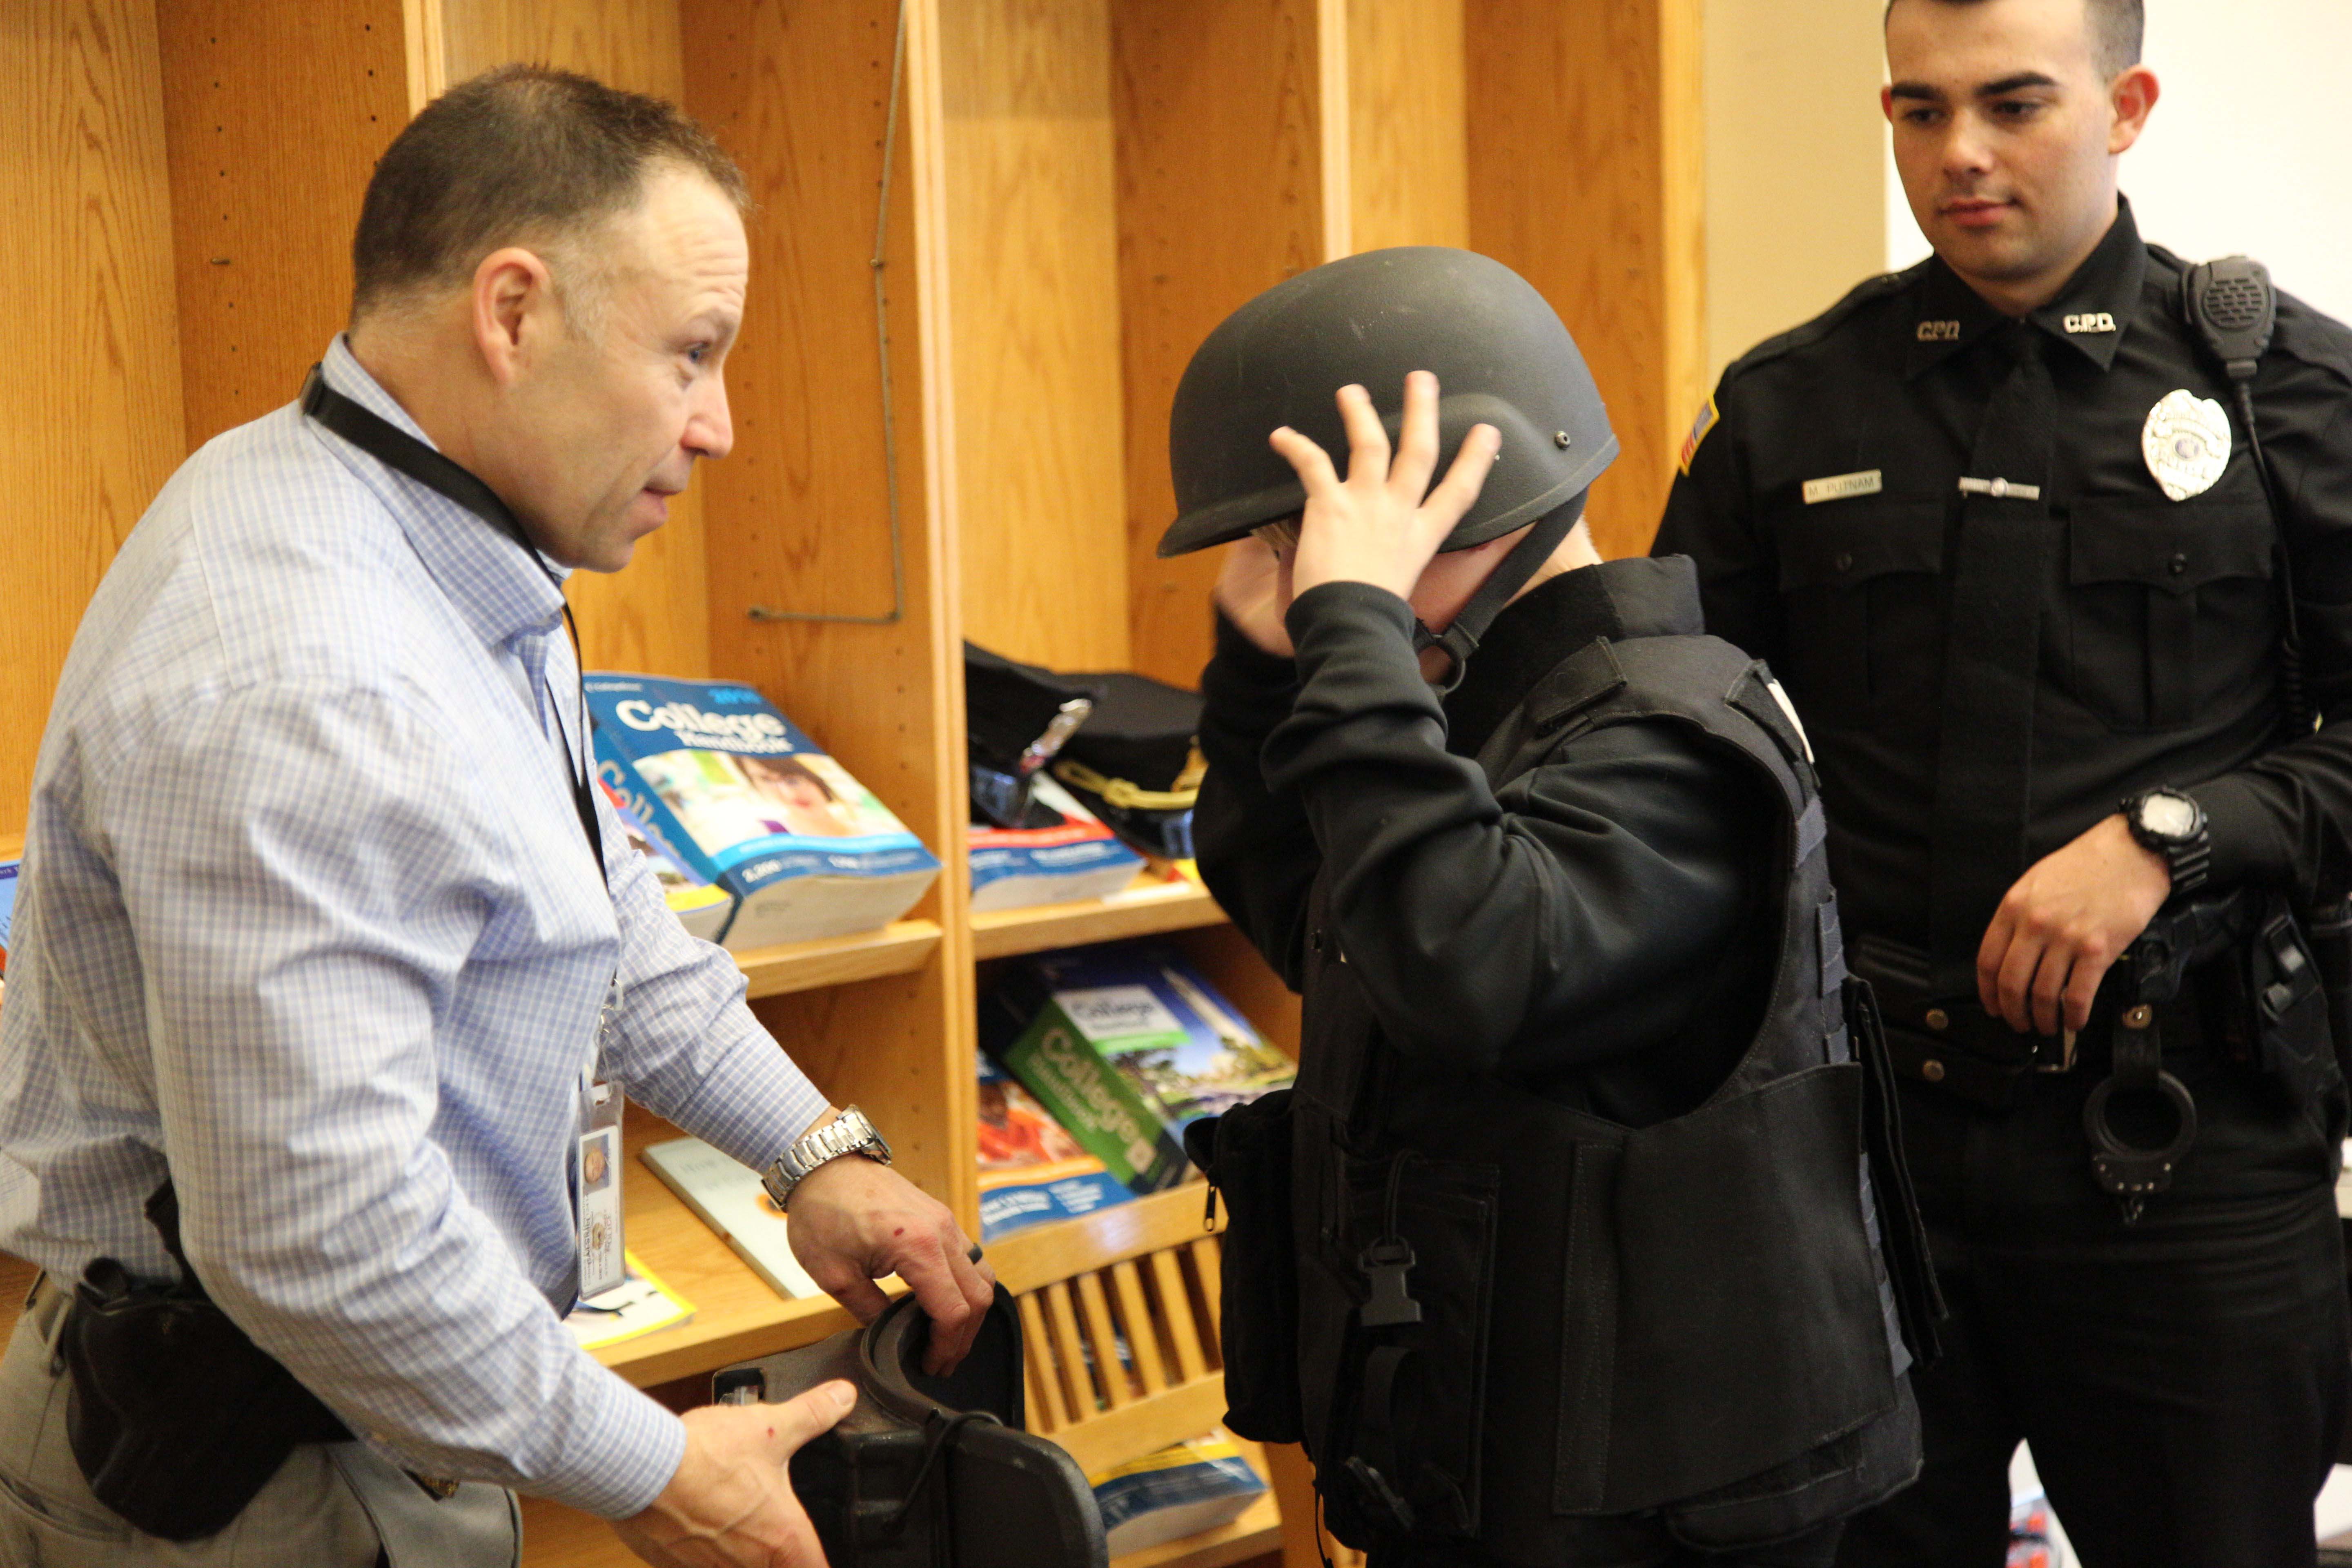 police officer helps boy try on SWAT helmet